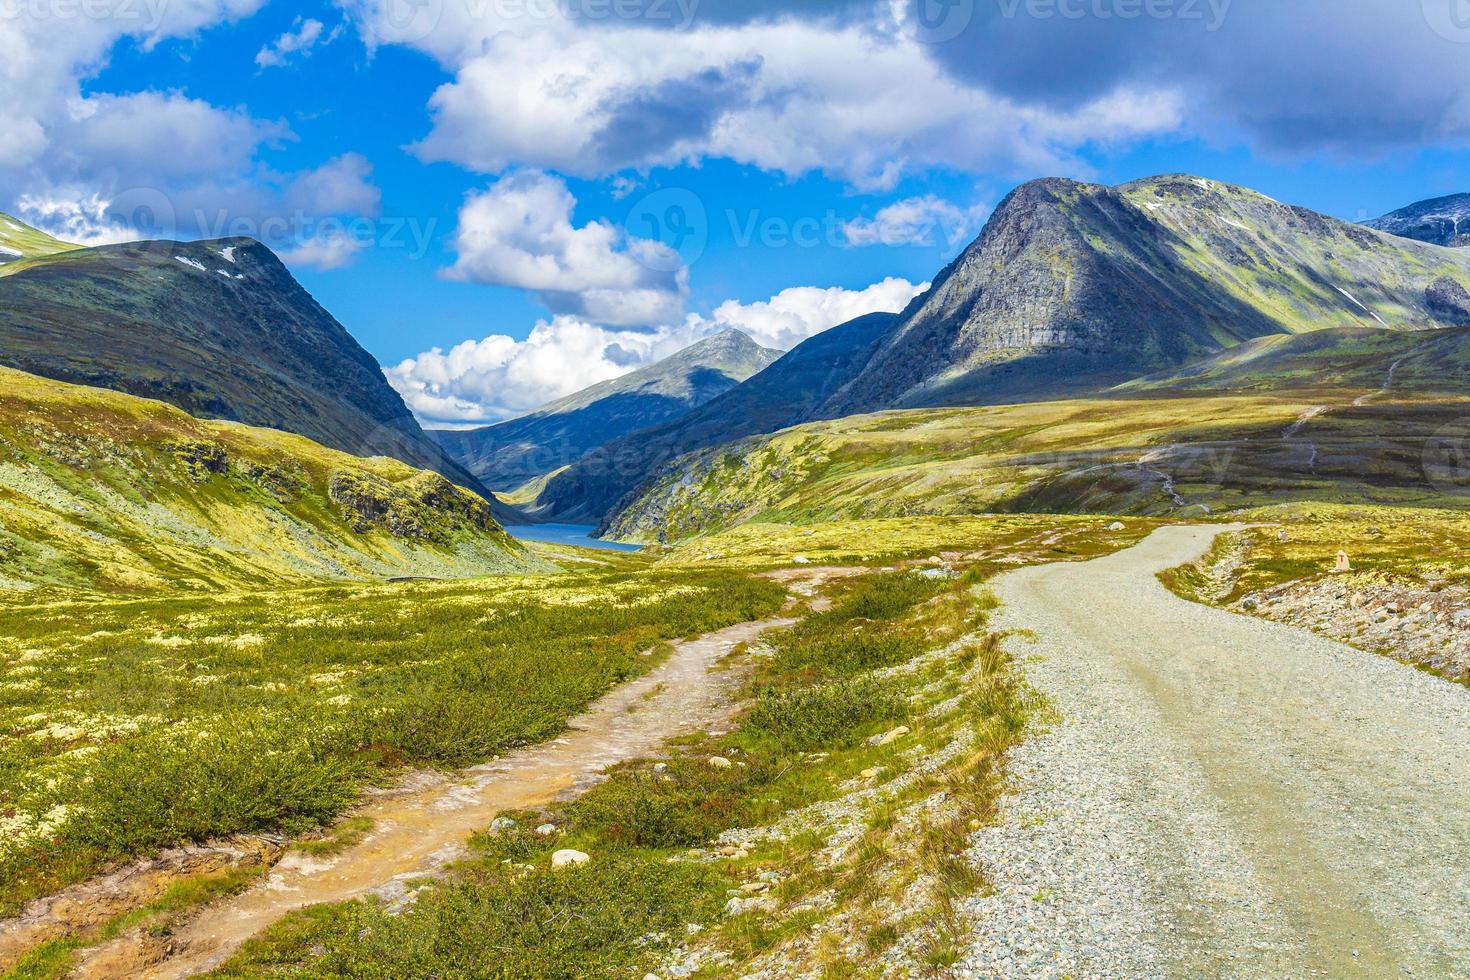 wunderschönes berg- und landschaftsnaturpanorama rondane nationalpark norwegen. foto